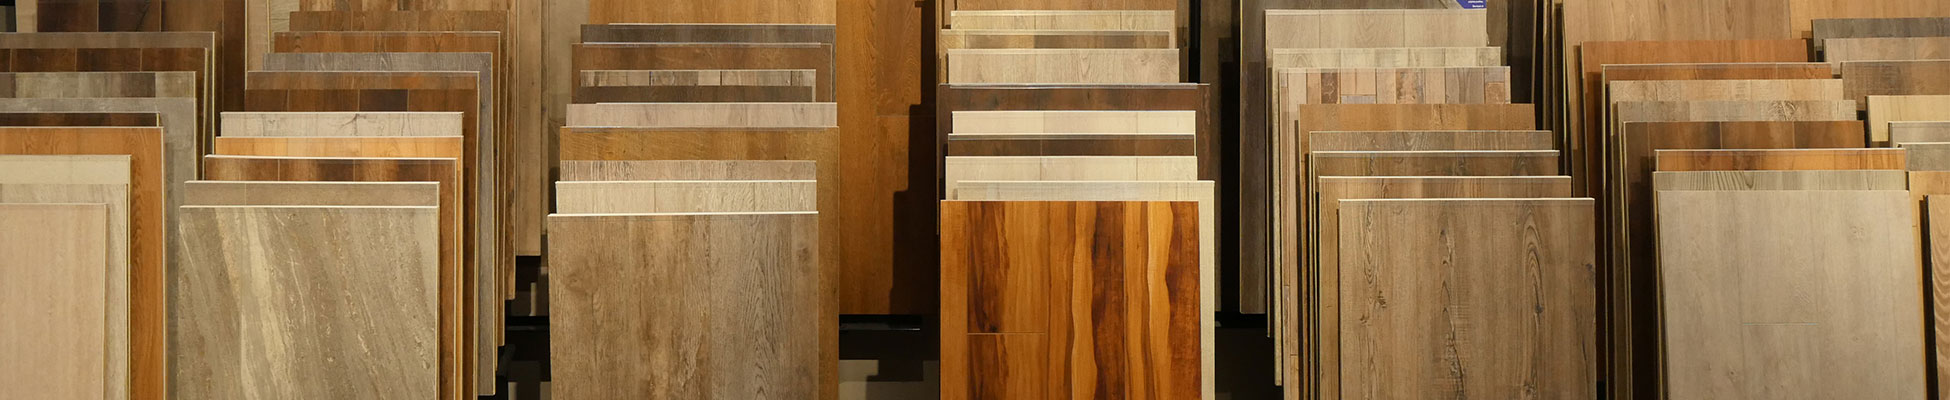 Planks of luxury vinyl tile that look like wood sitting upright in bins